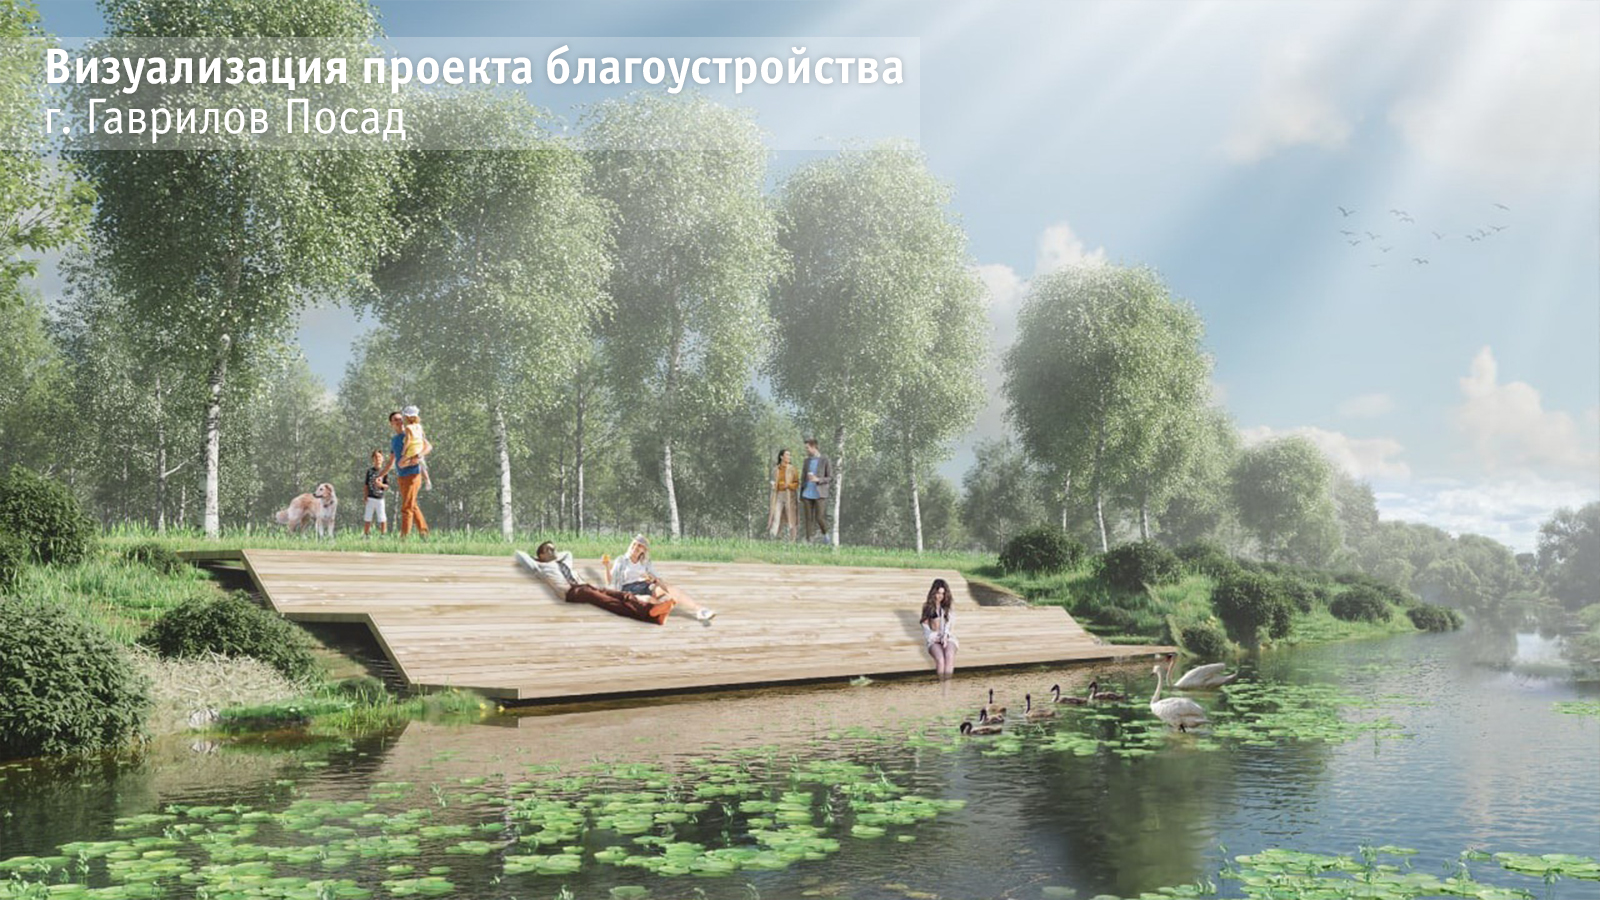 Определены участники всероссийского конкурса лучших проектов благоустройства от Ивановской области на 2023 год